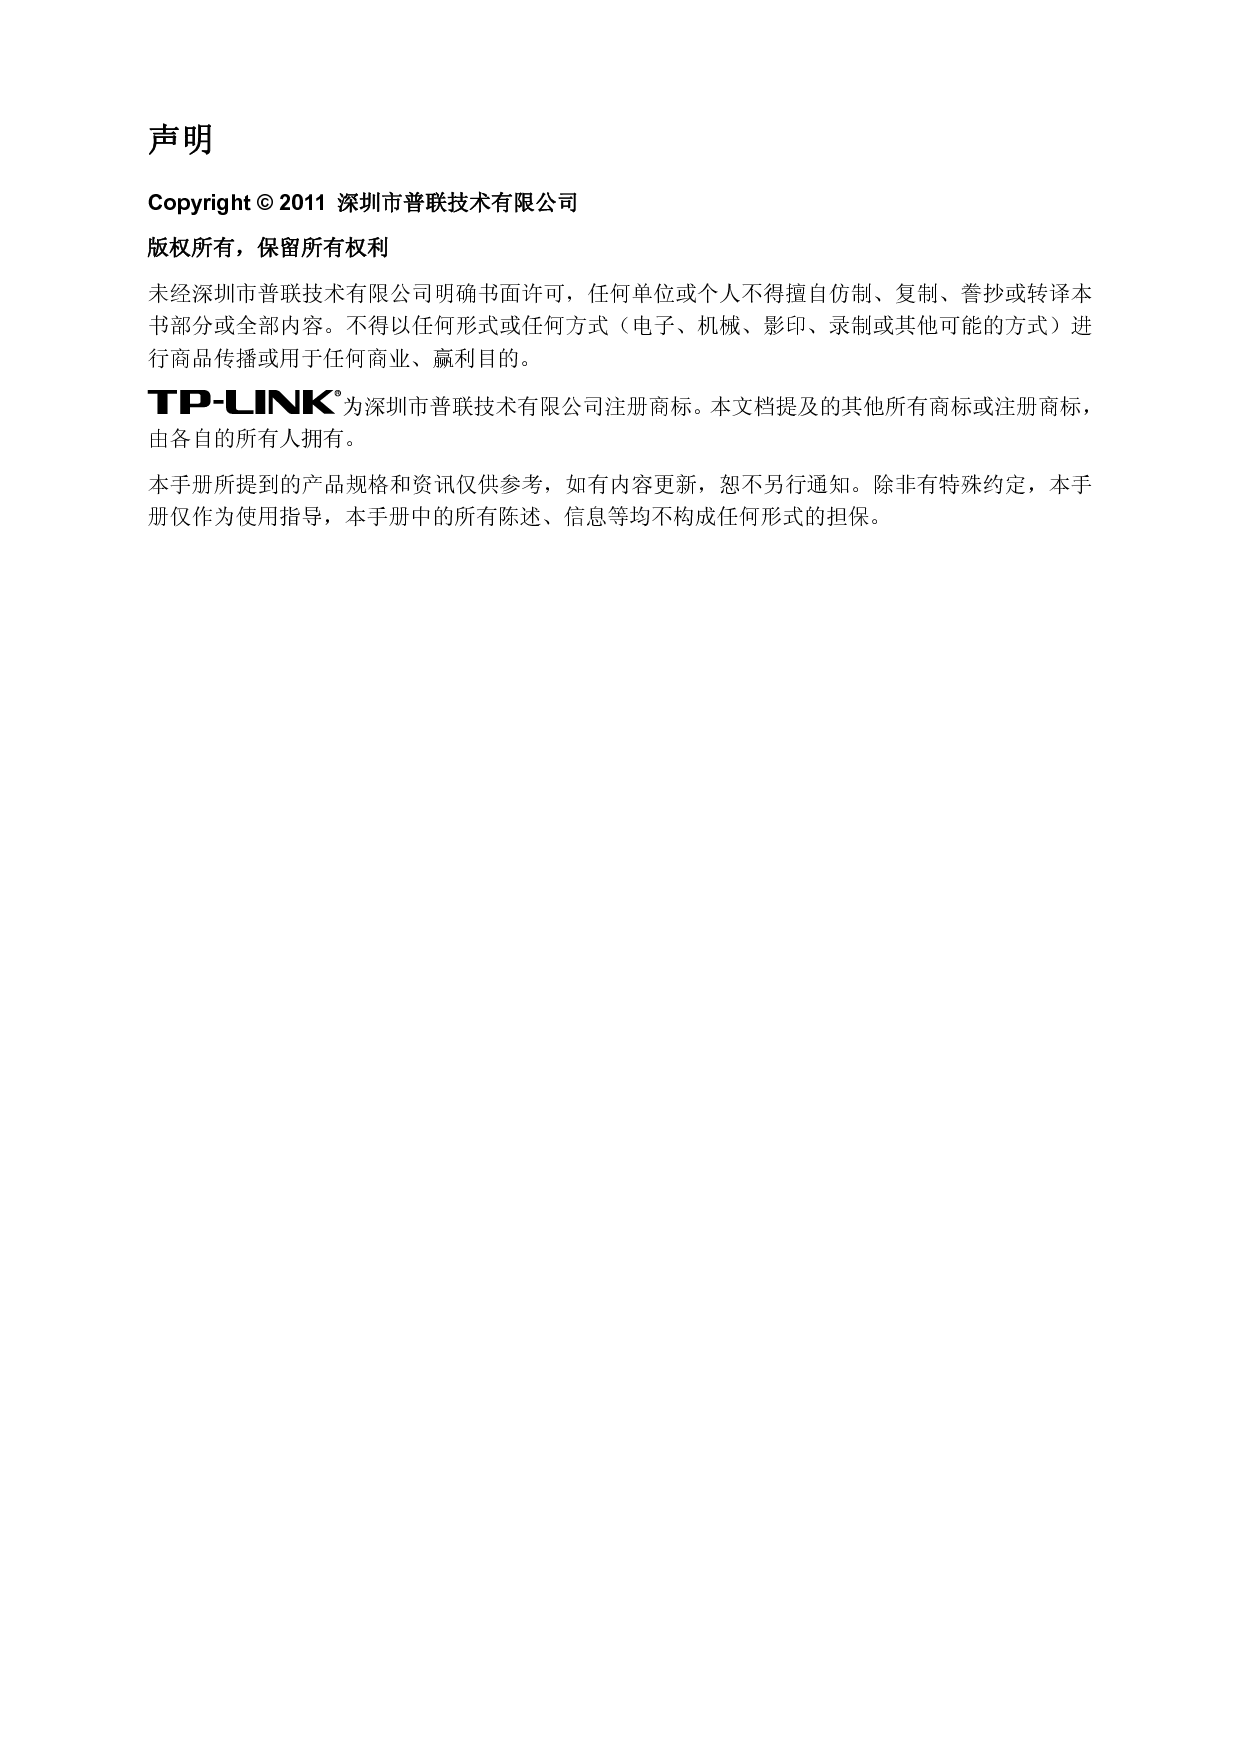 普联 TP-Link TL-PA501 设置指南 第1页